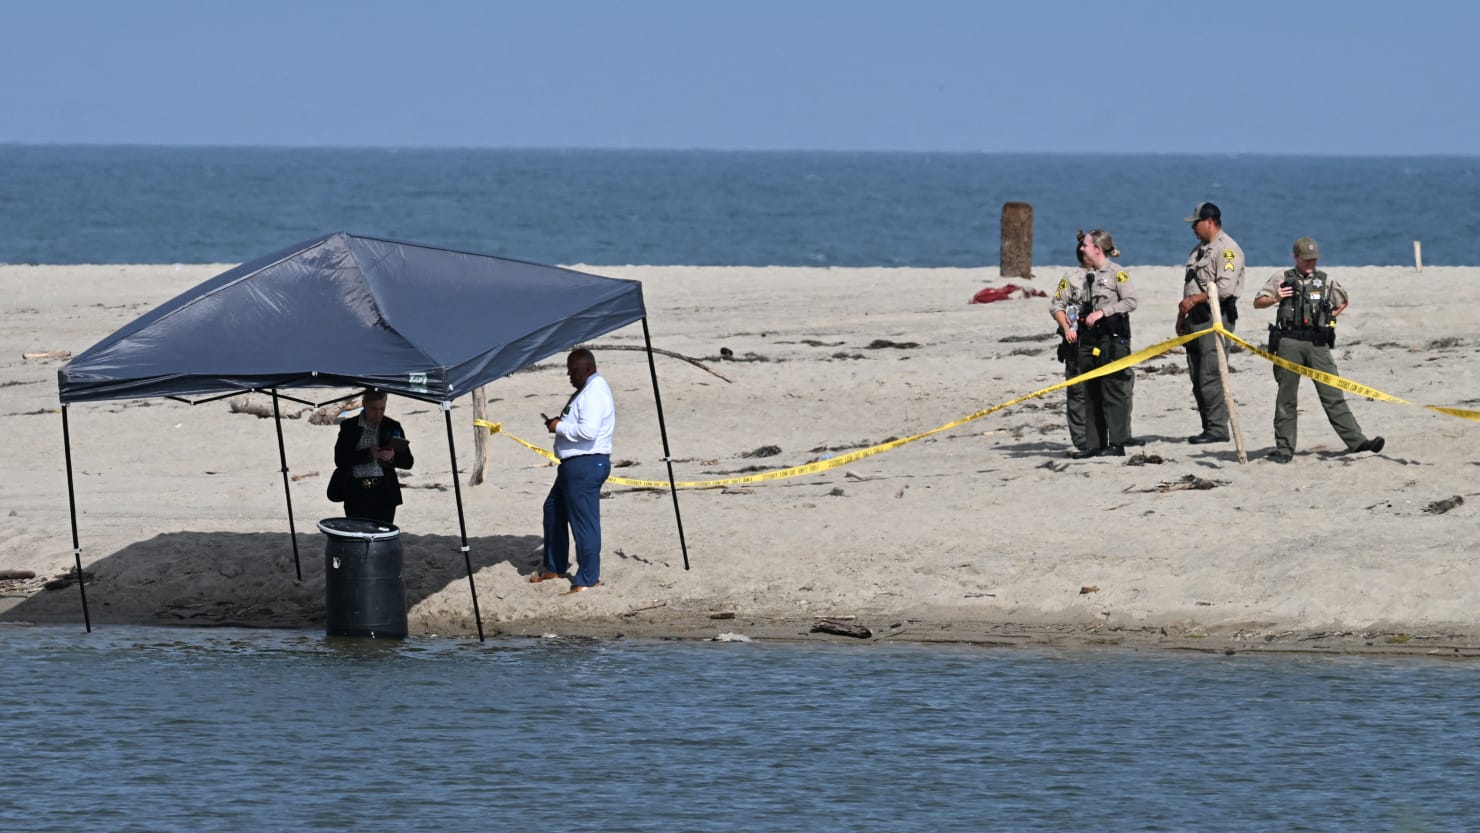 Naked Body Found Stuffed Inside Barrel by Malibu Lifeguard Identified